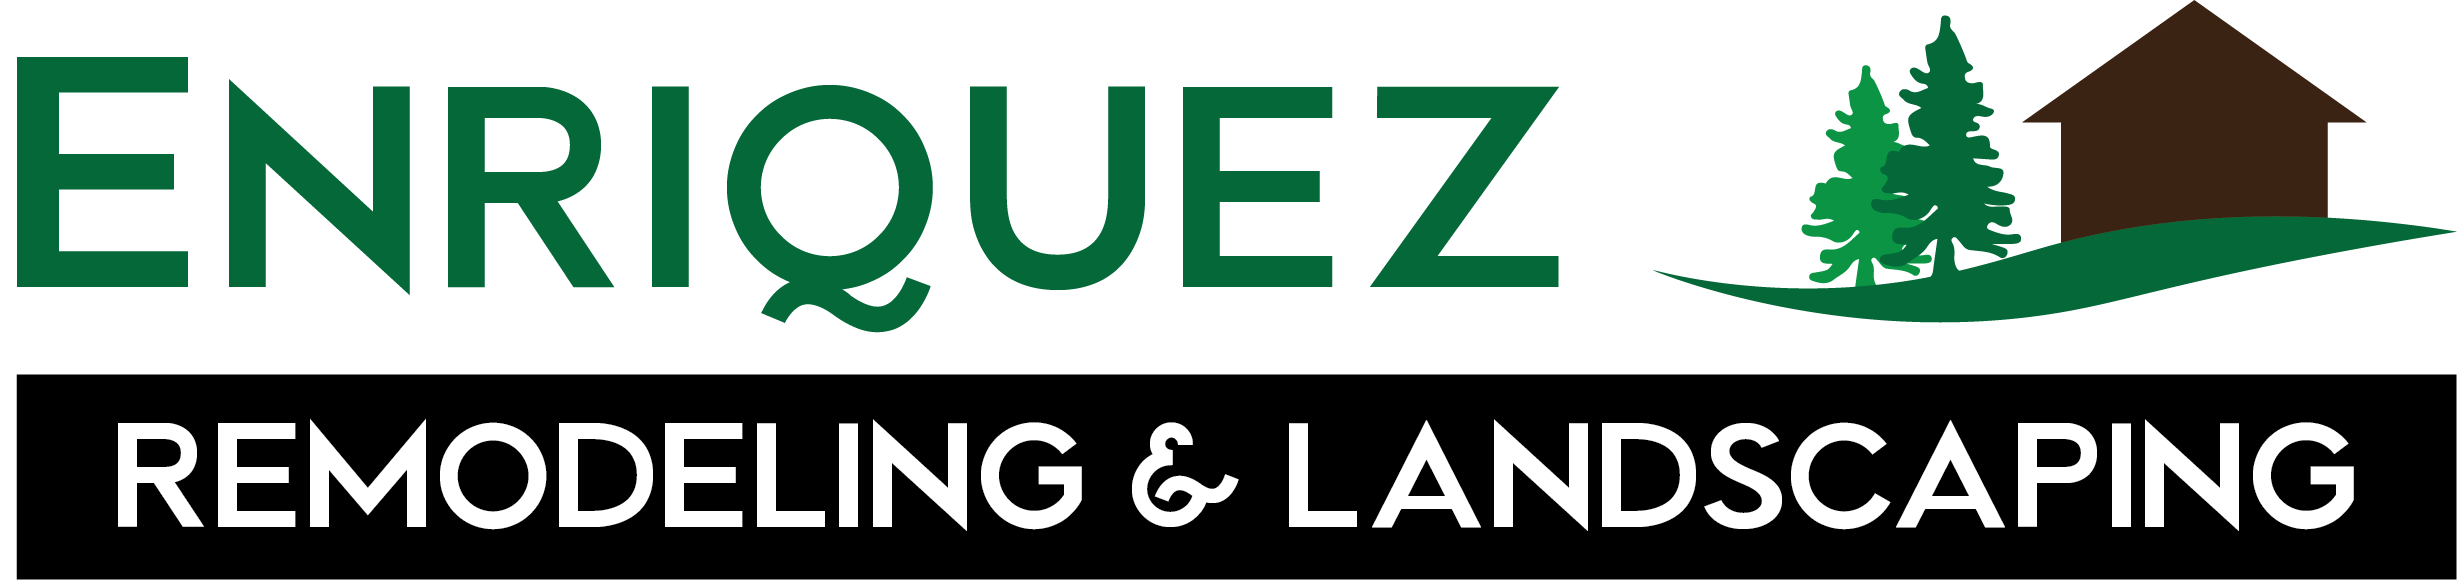 Enriquez Landscaping & Remodeling Logo